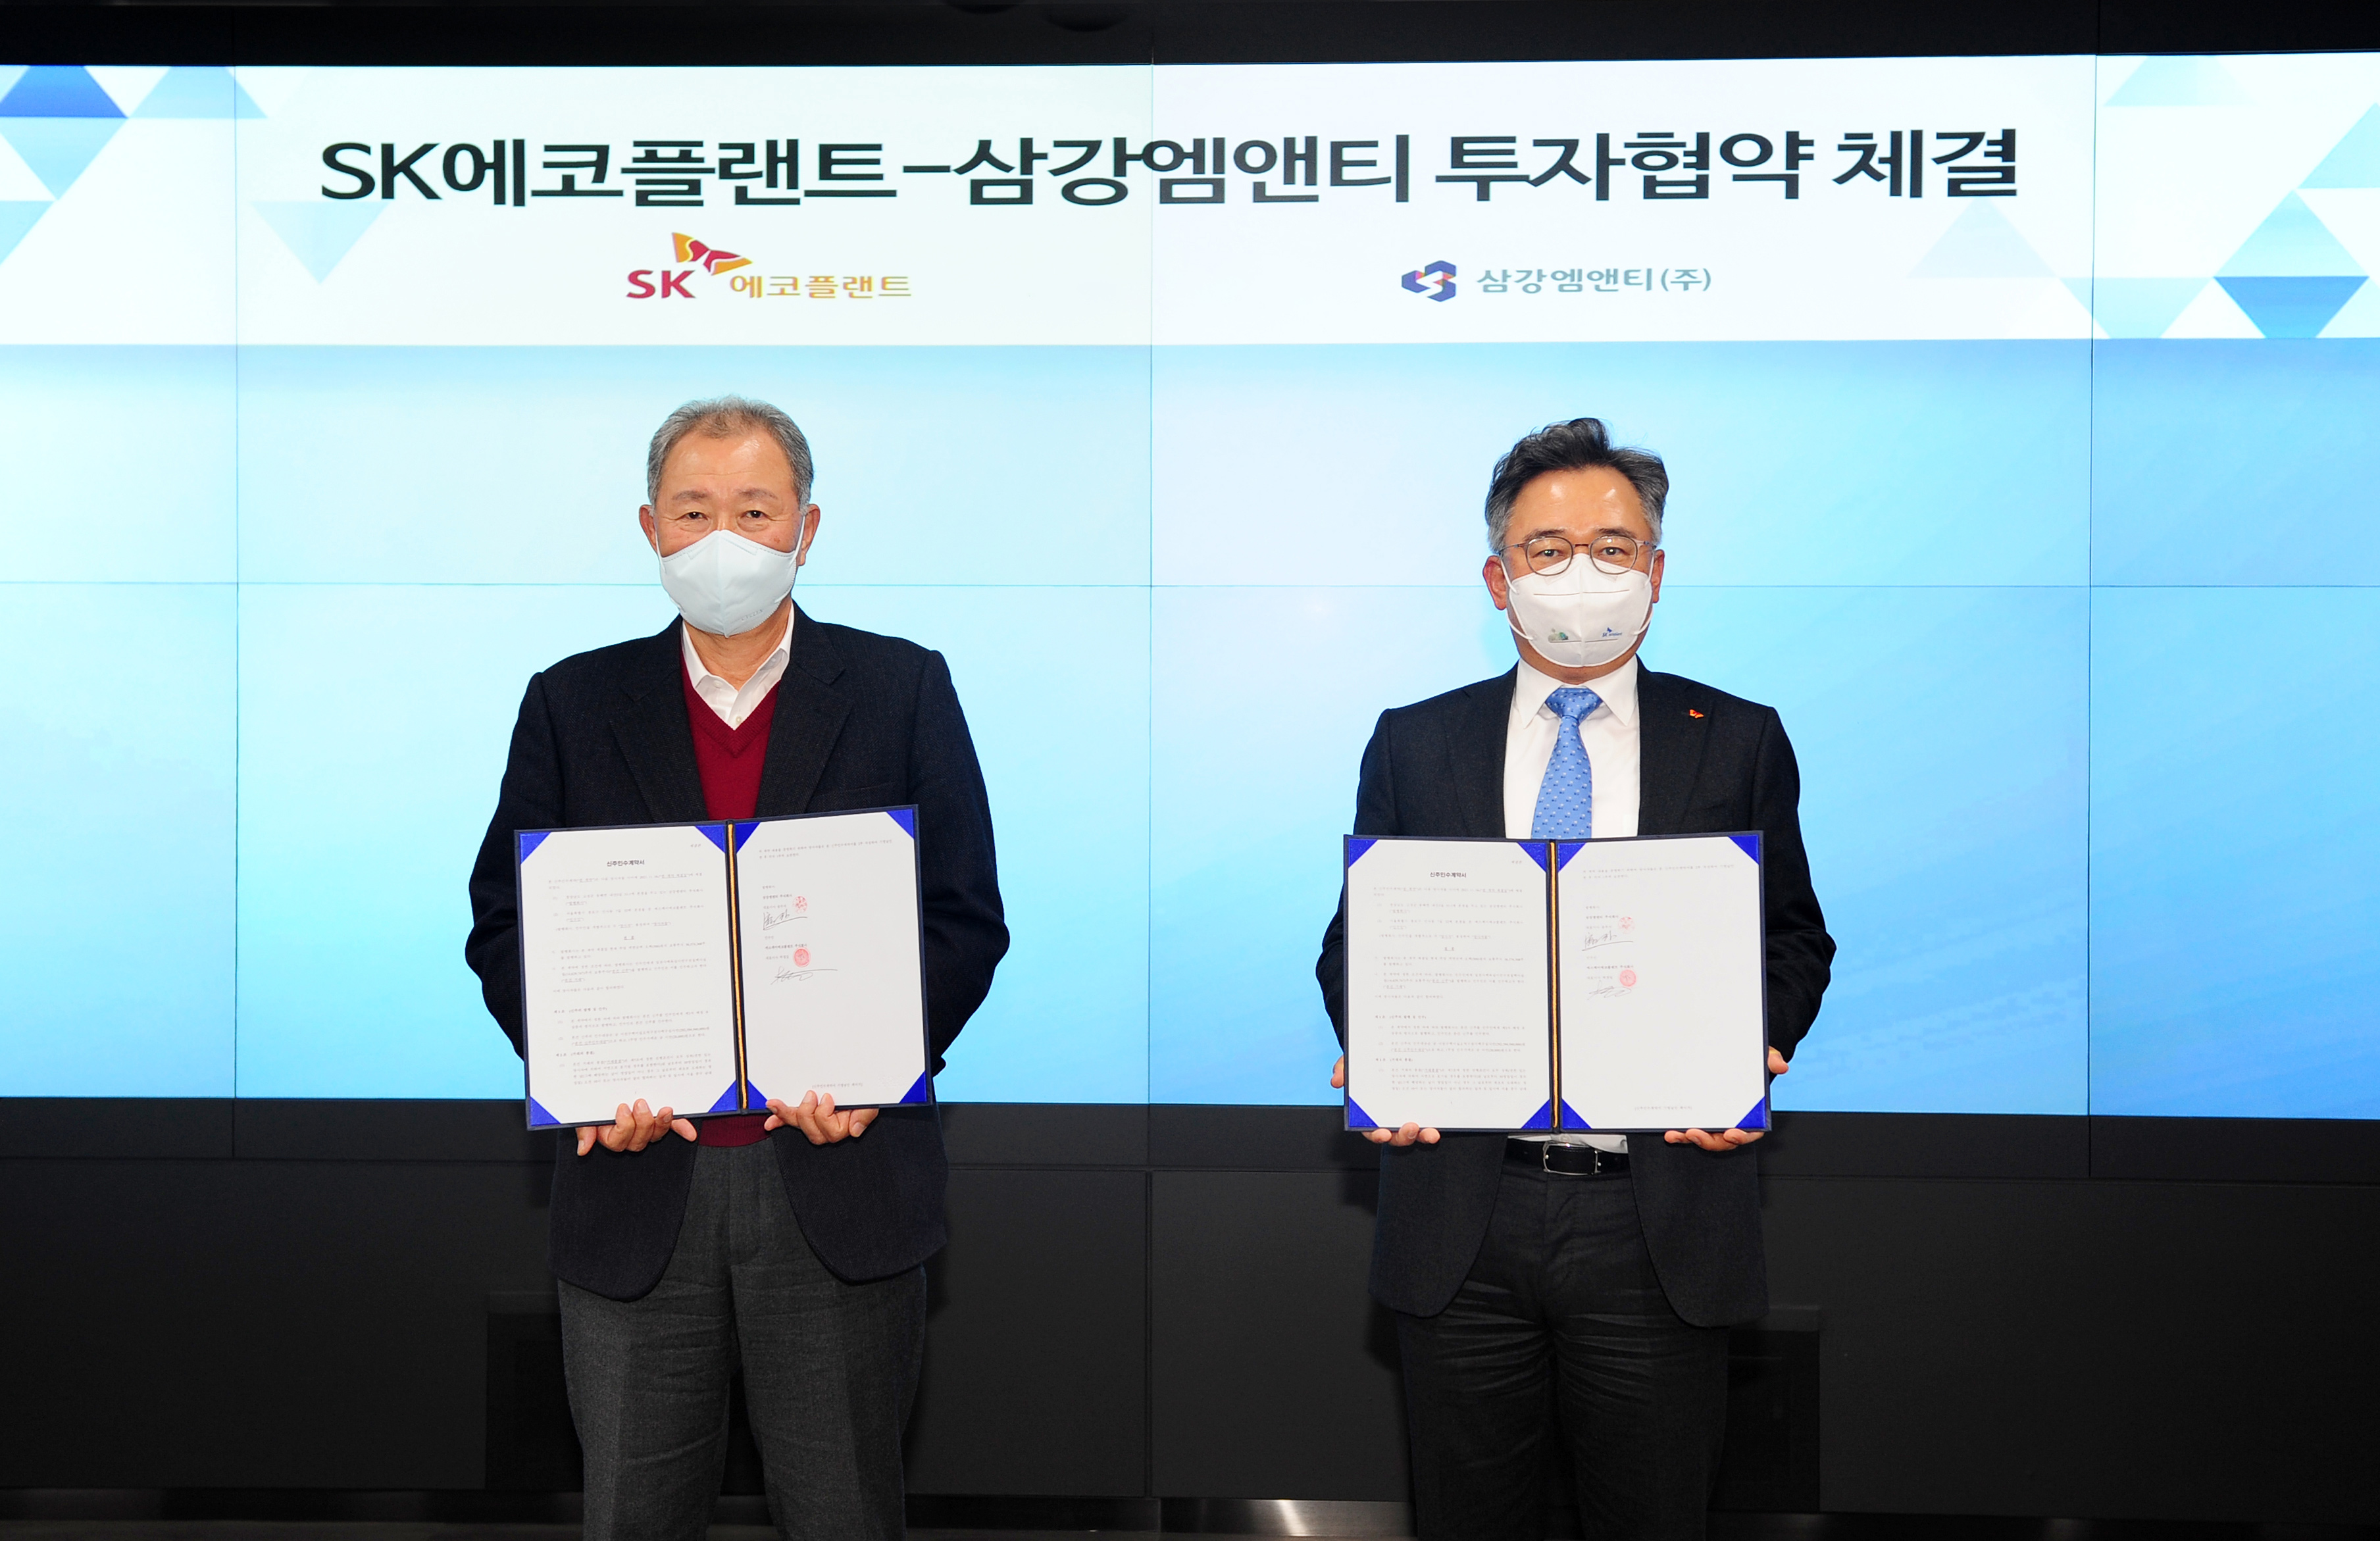 SK에코플랜트- 삼강엠앤티의 투자협약 체결